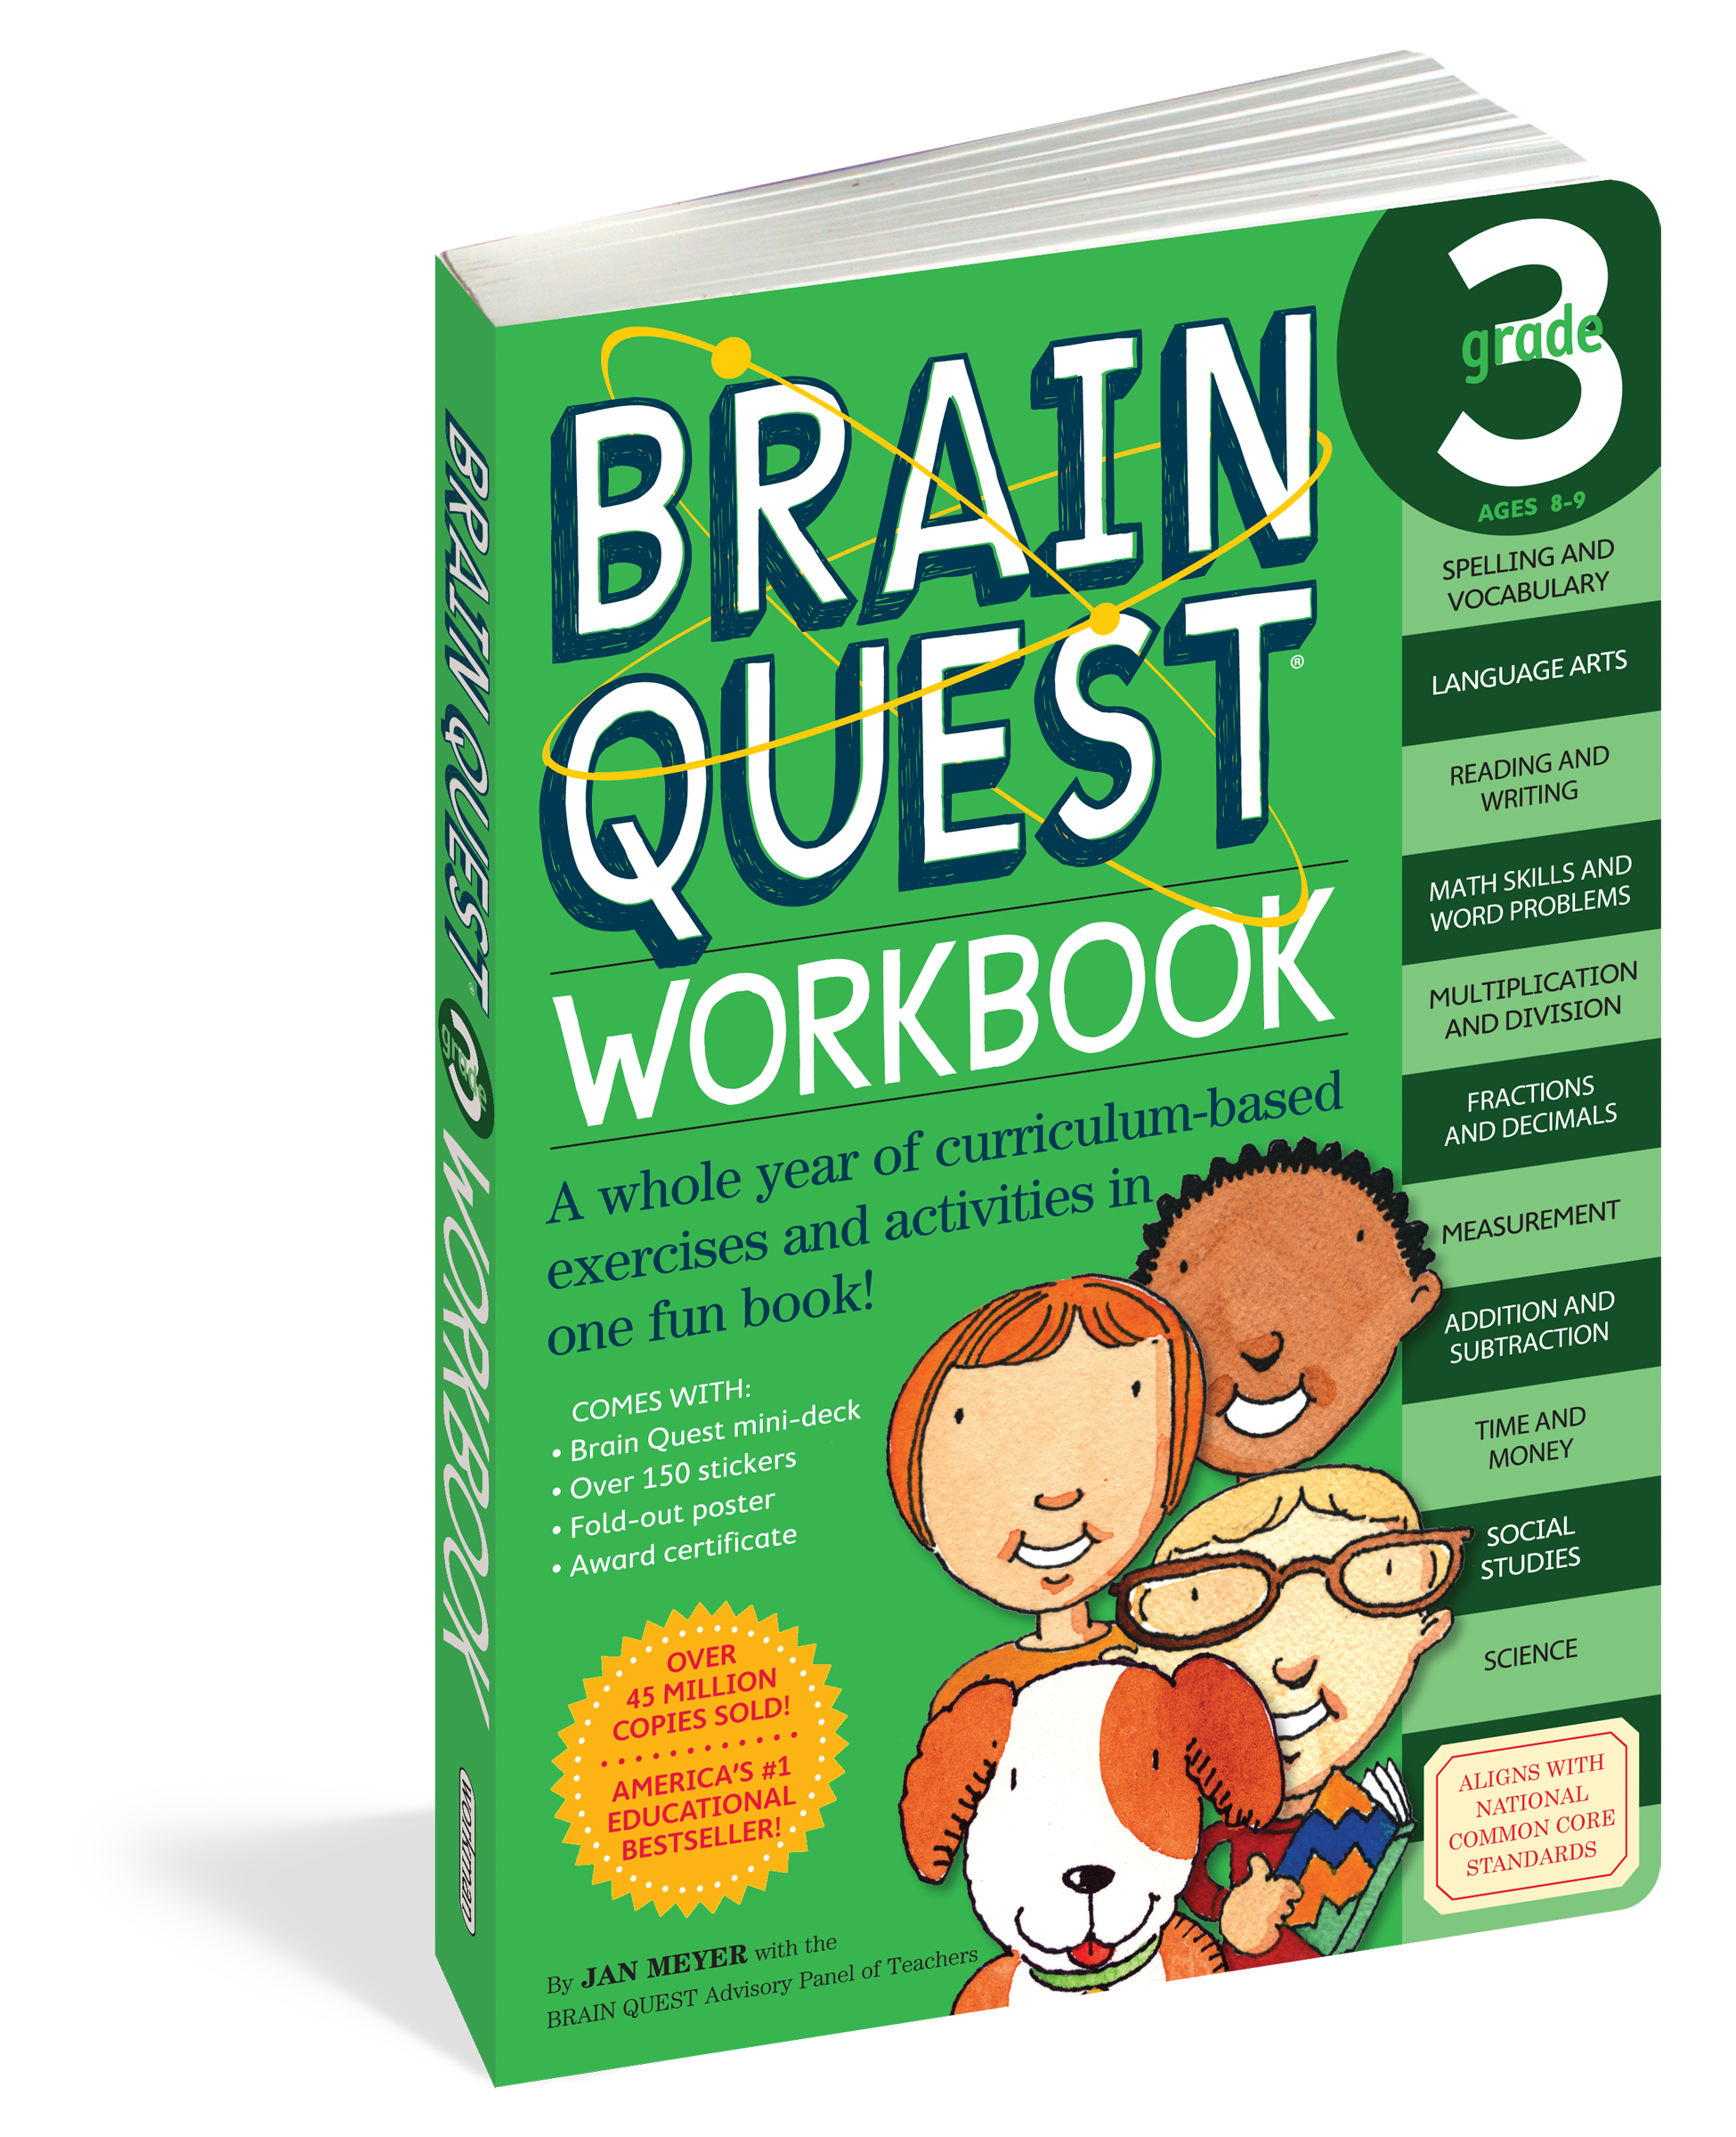 Brain Quest Grade 3